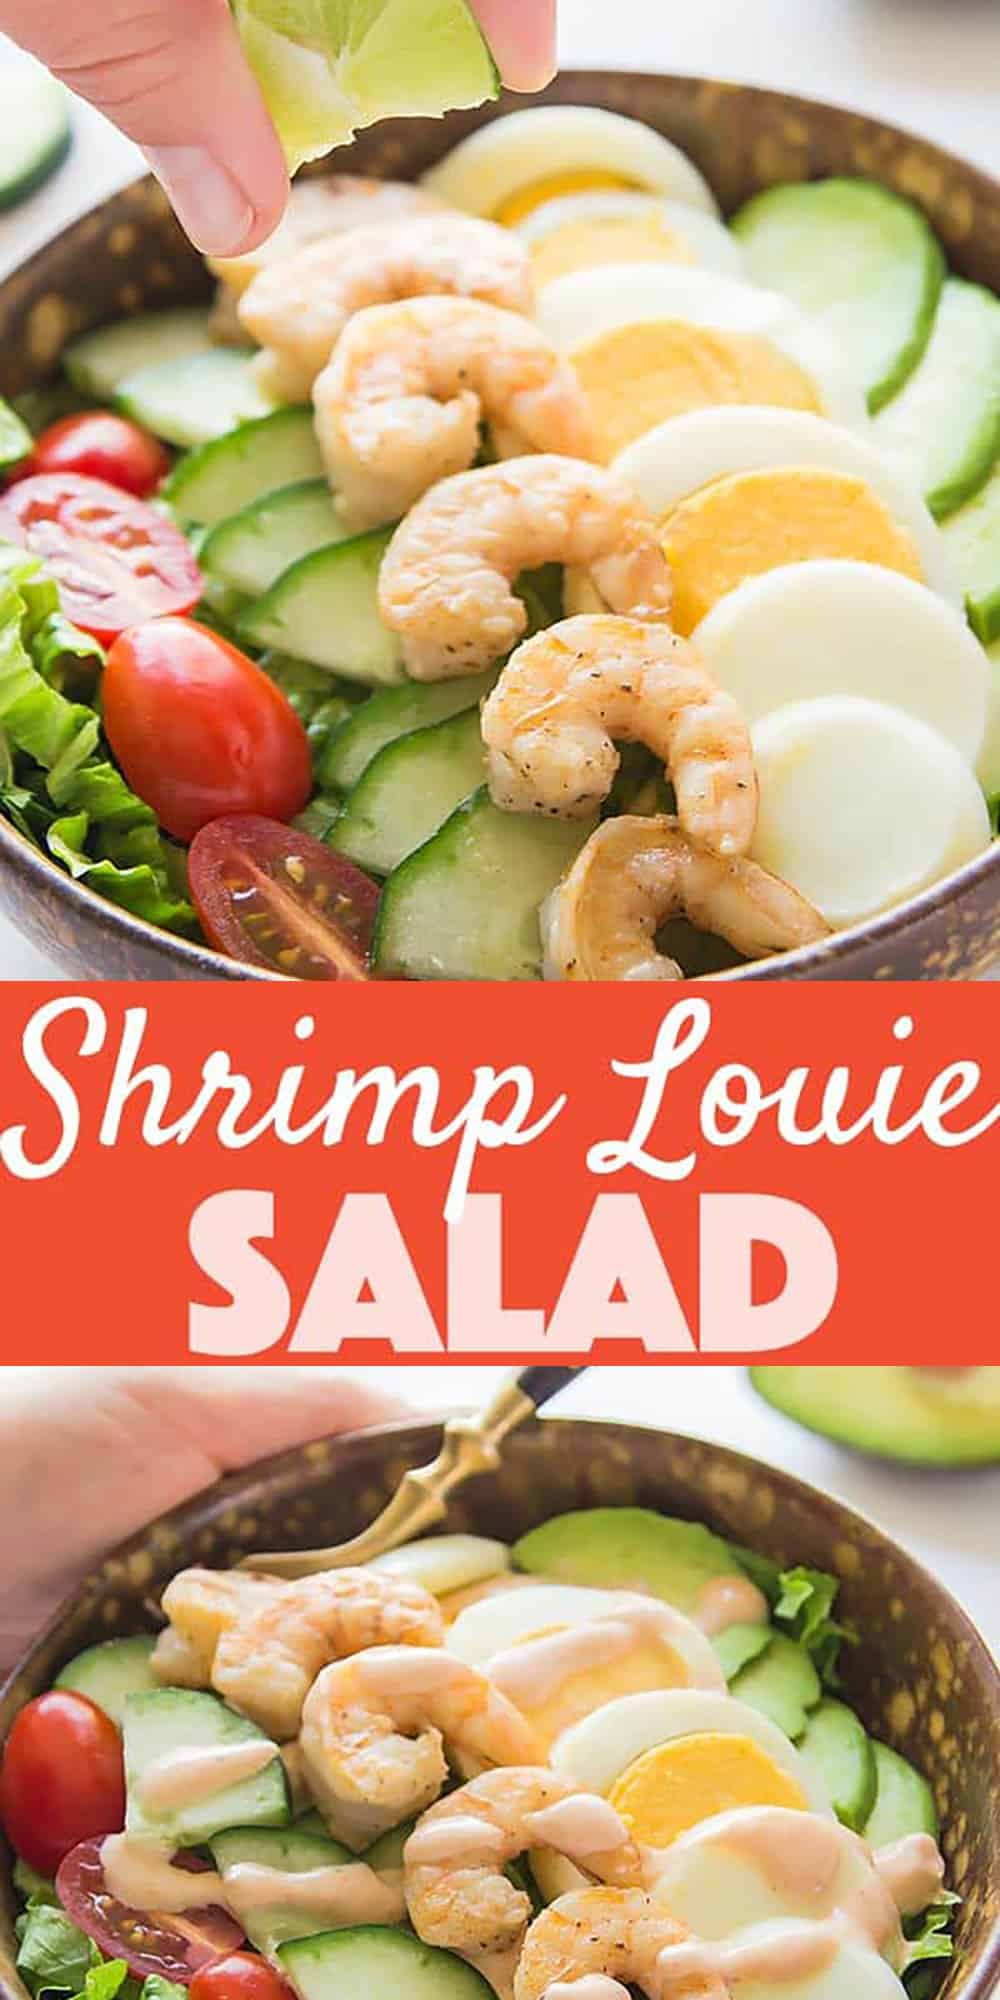 Shrimp Louie - The Best Shrimp Avocado Salad Recipe